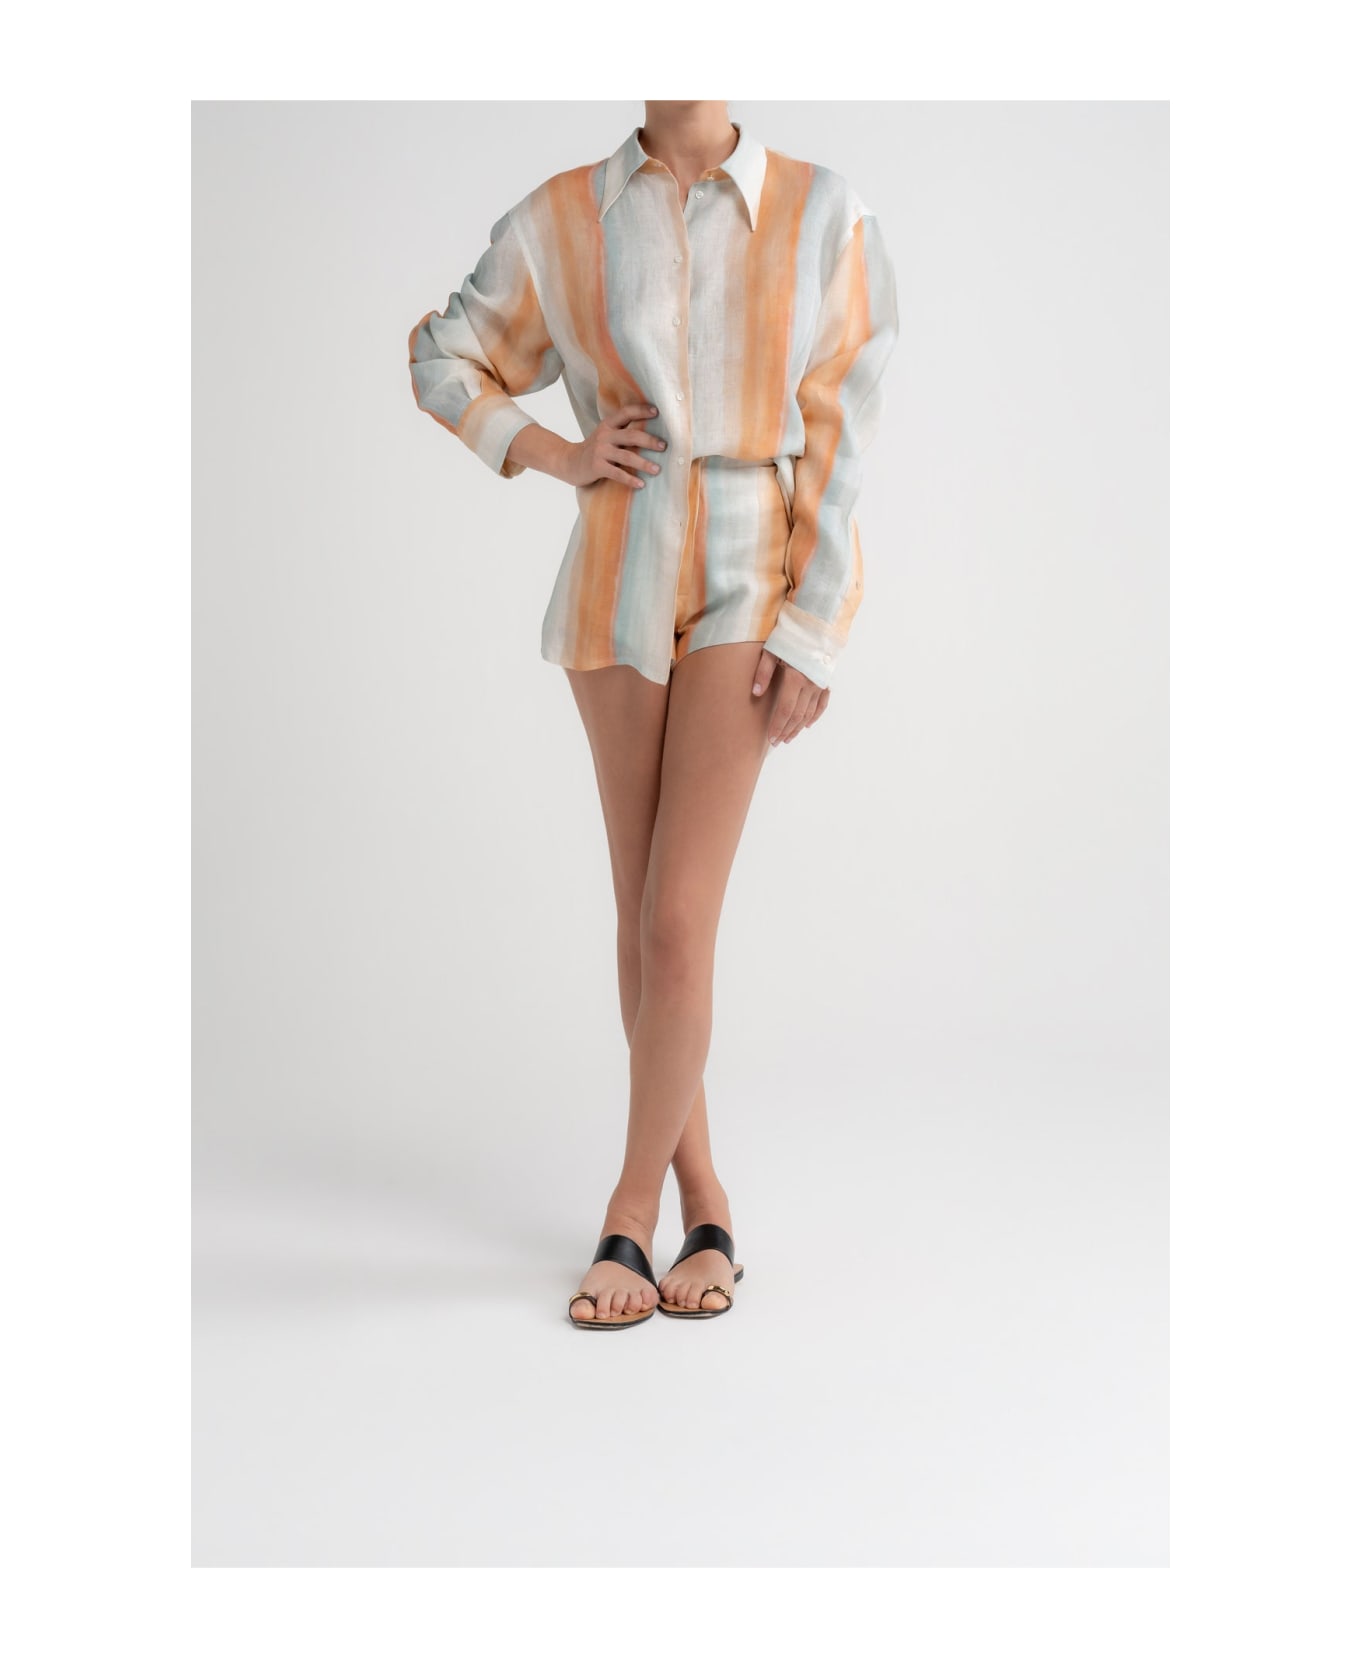 Amotea Donna In Striped Linen - Multicolor ショートパンツ